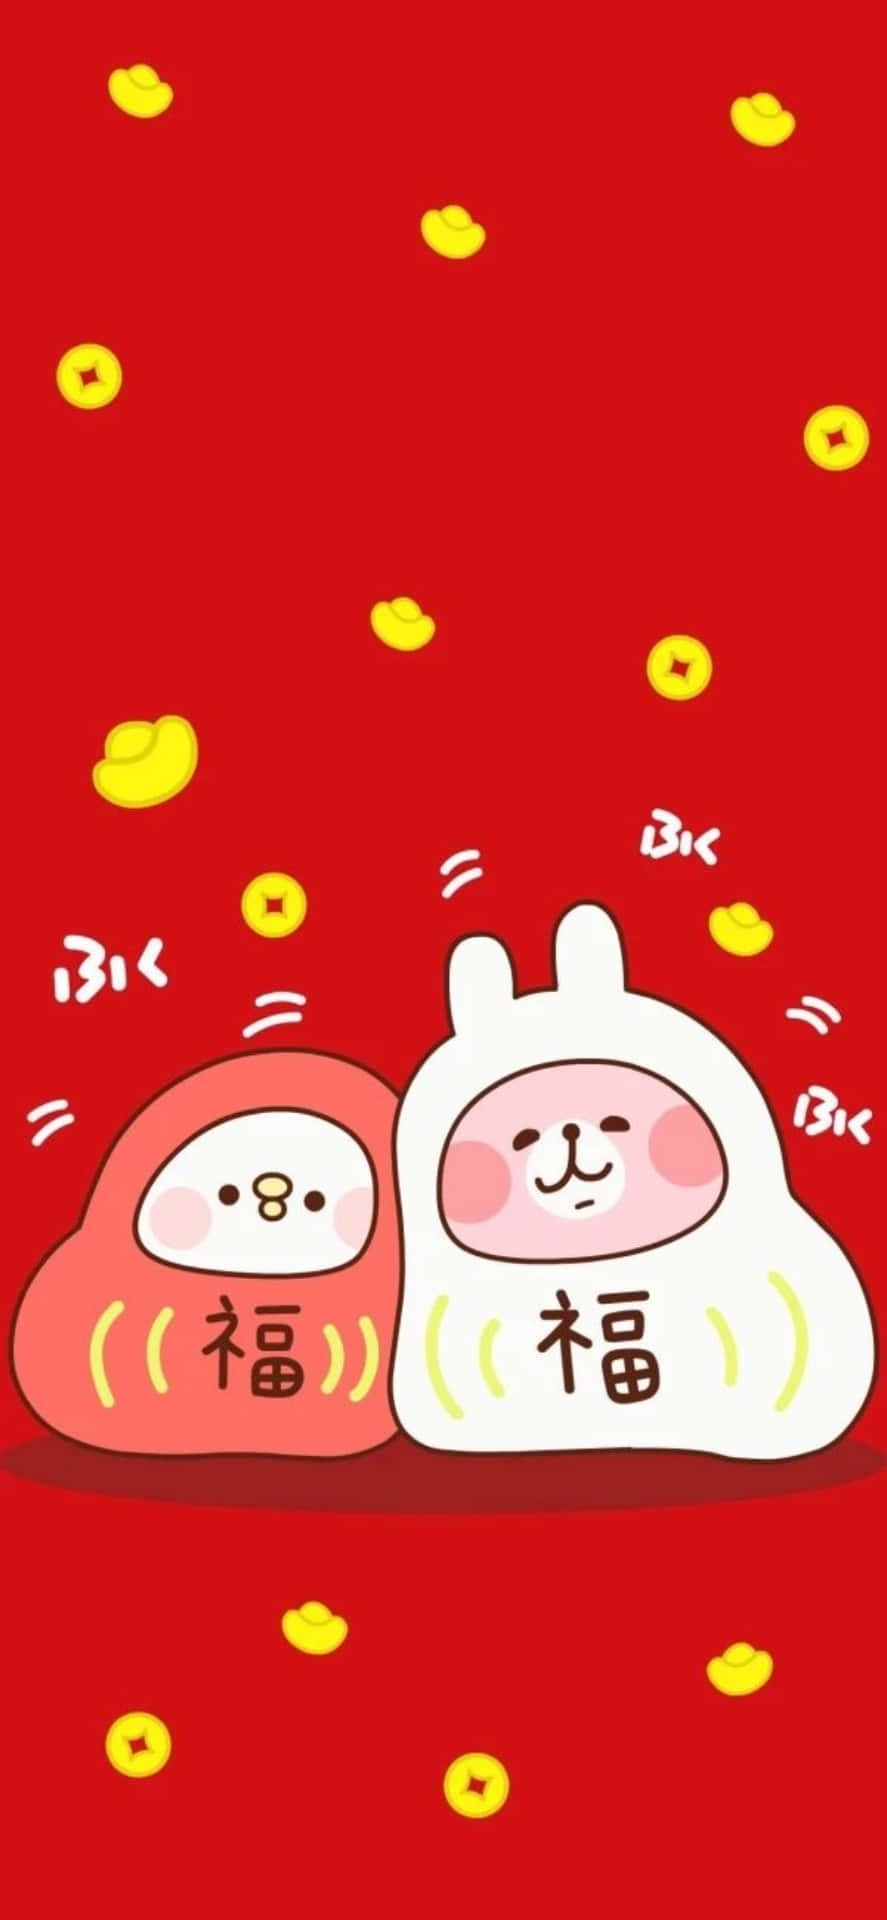 Fejr Kinas Nytår med en ny iPhone baggrund. Wallpaper